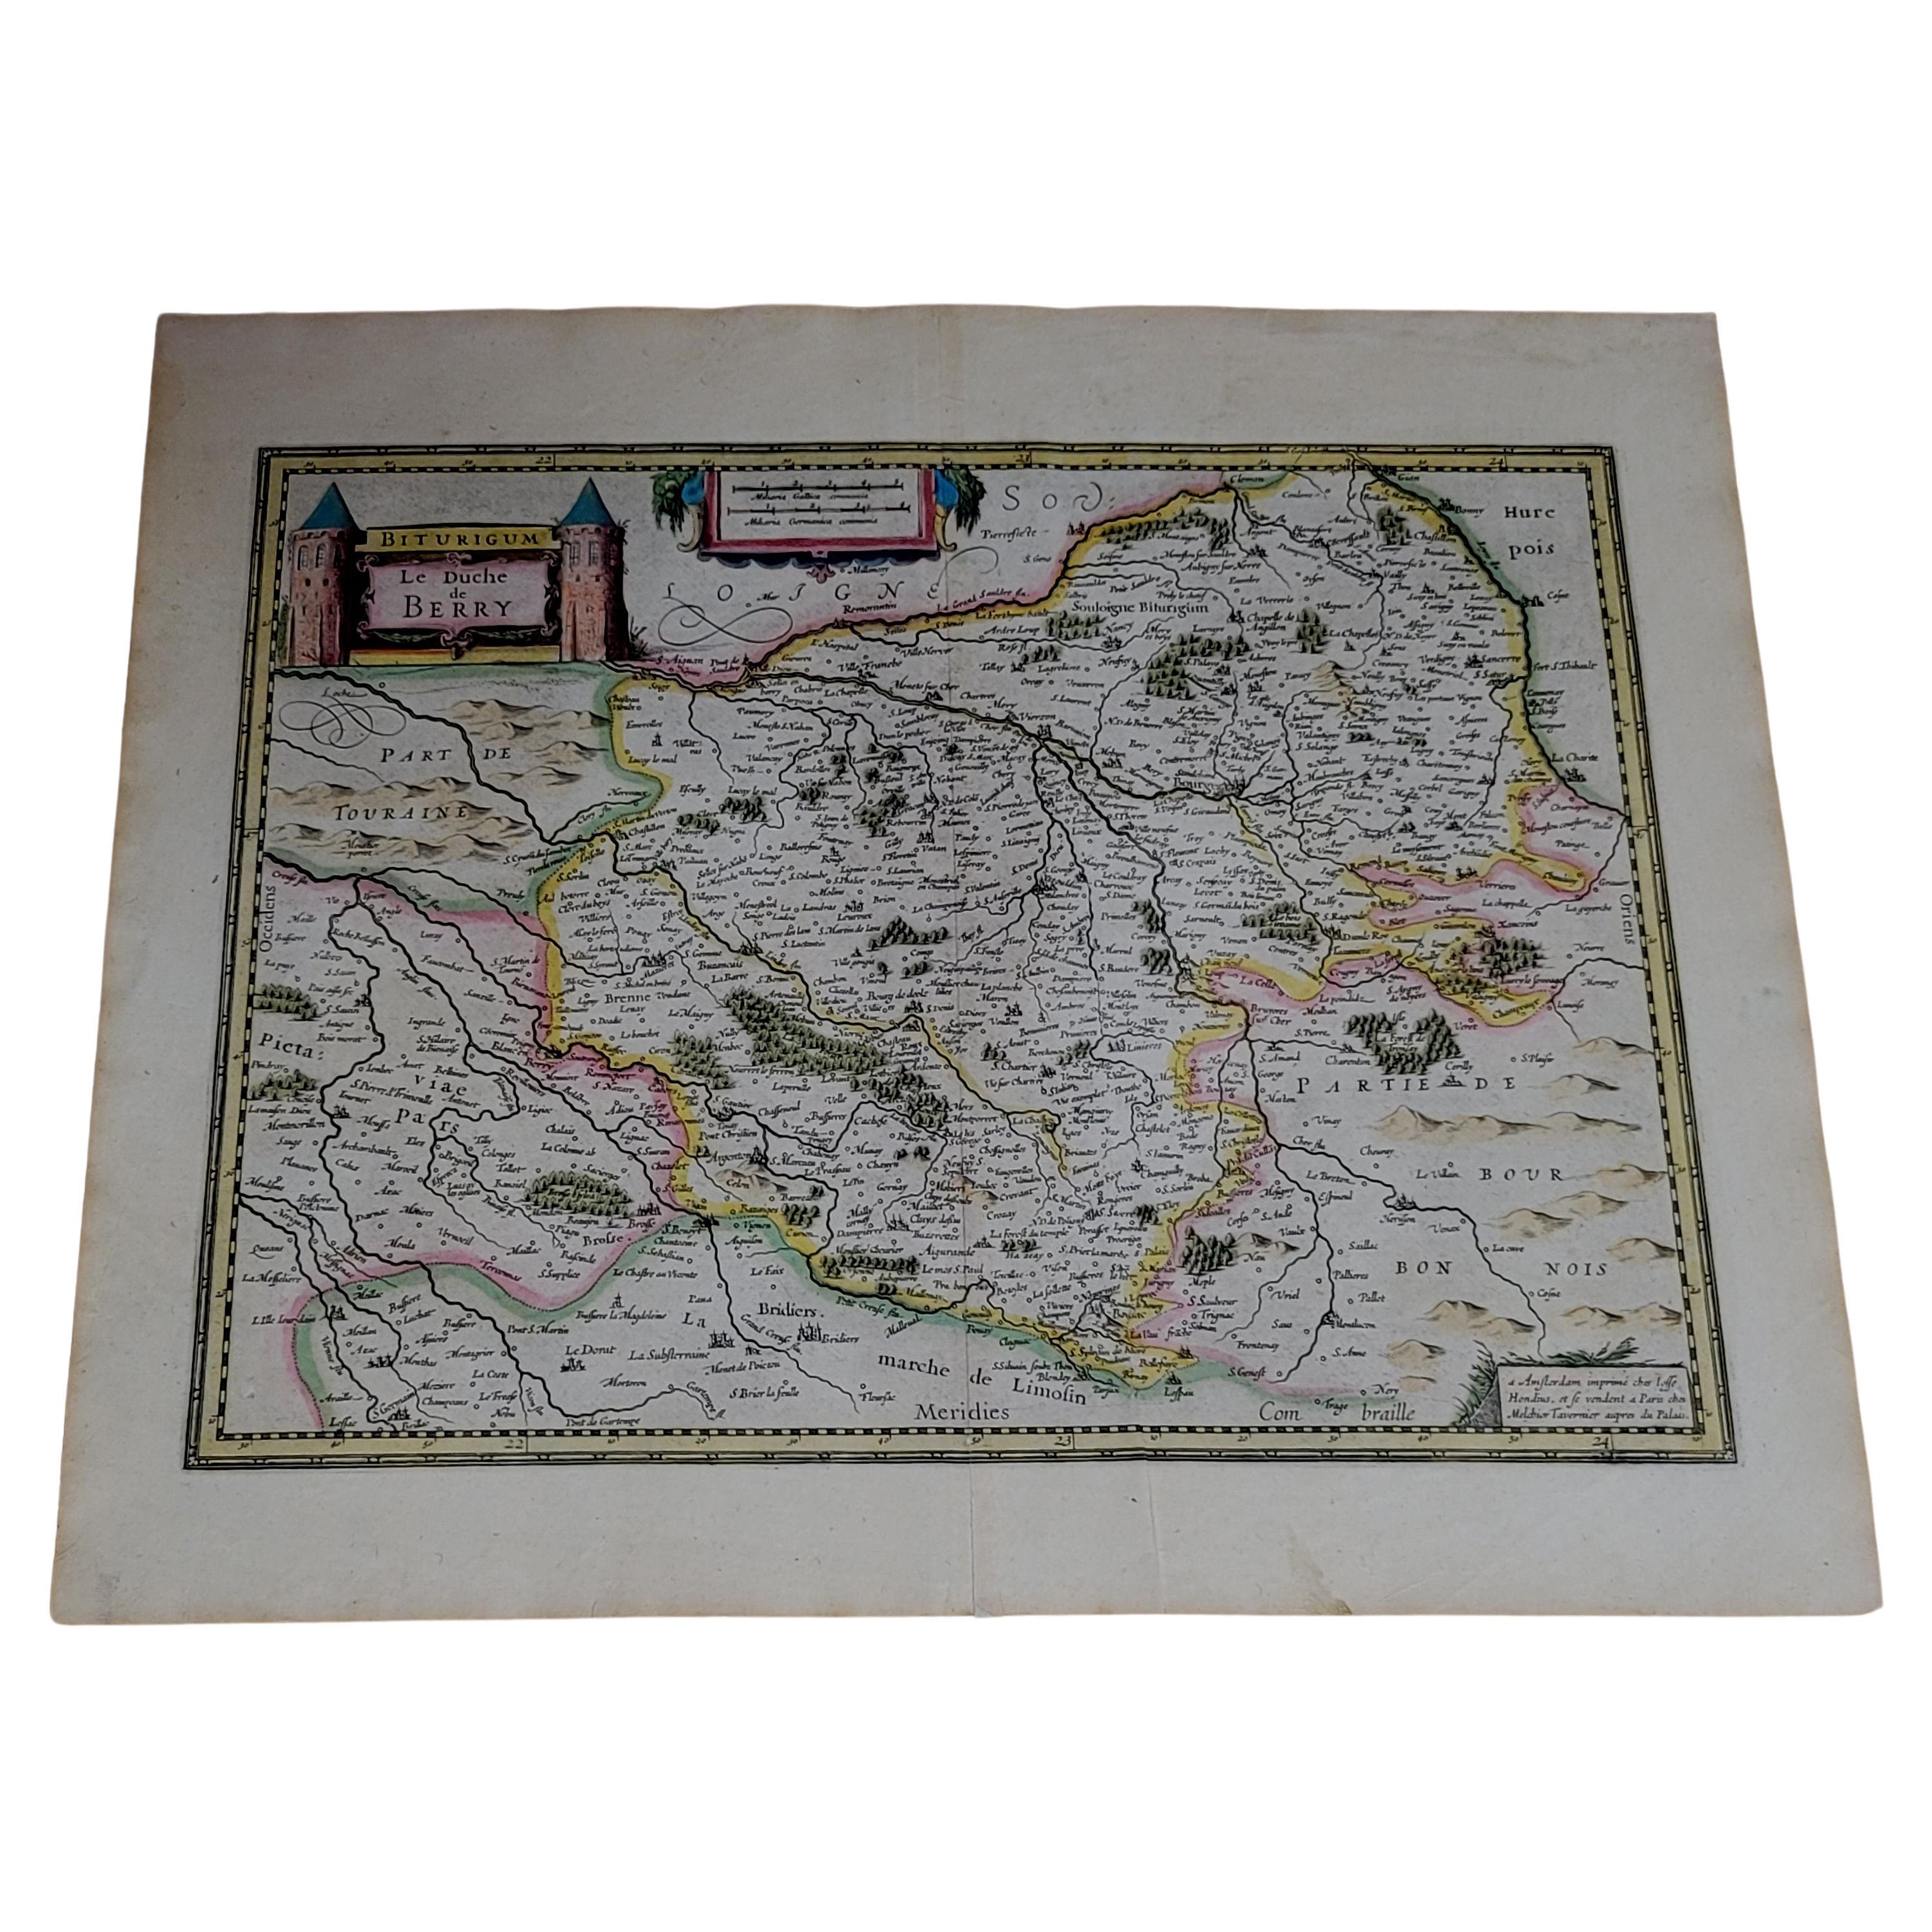 1633 map, entitled "La douche de Berry, " Original Hand Colored Ric.0005 For Sale